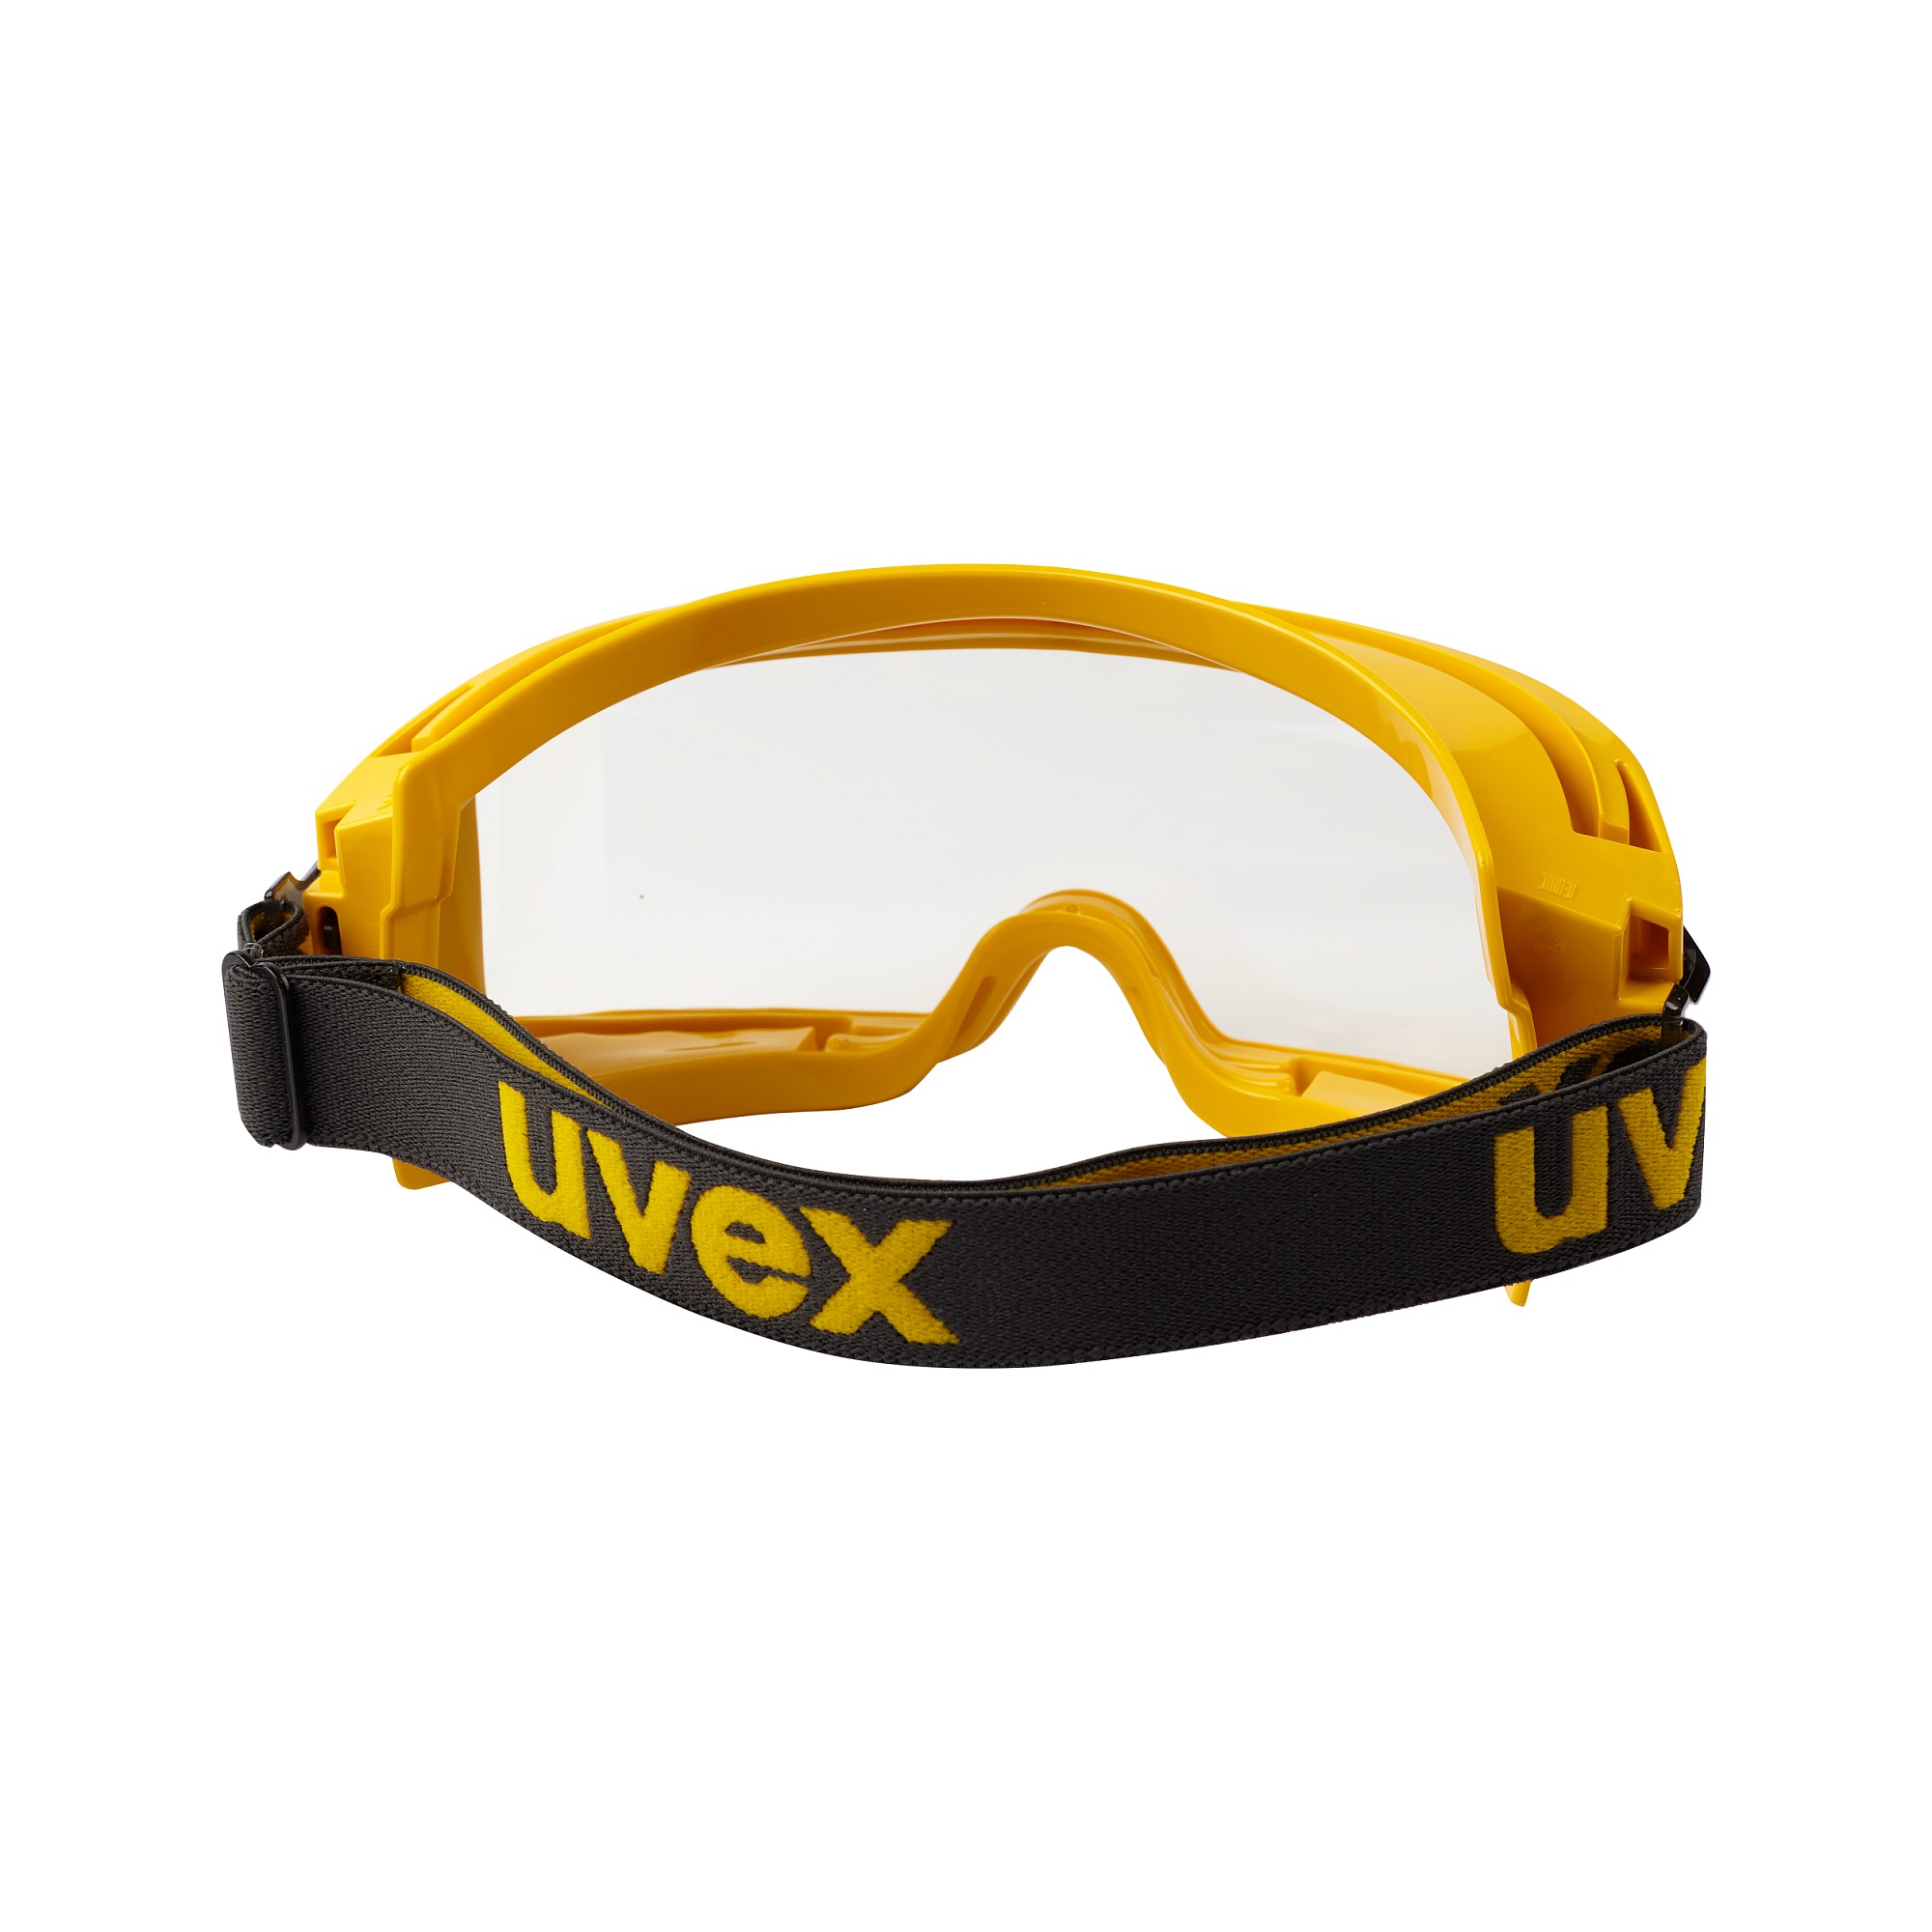  защитные закрытые UVEX «Ультравижн» огнестойкие, герметичные .